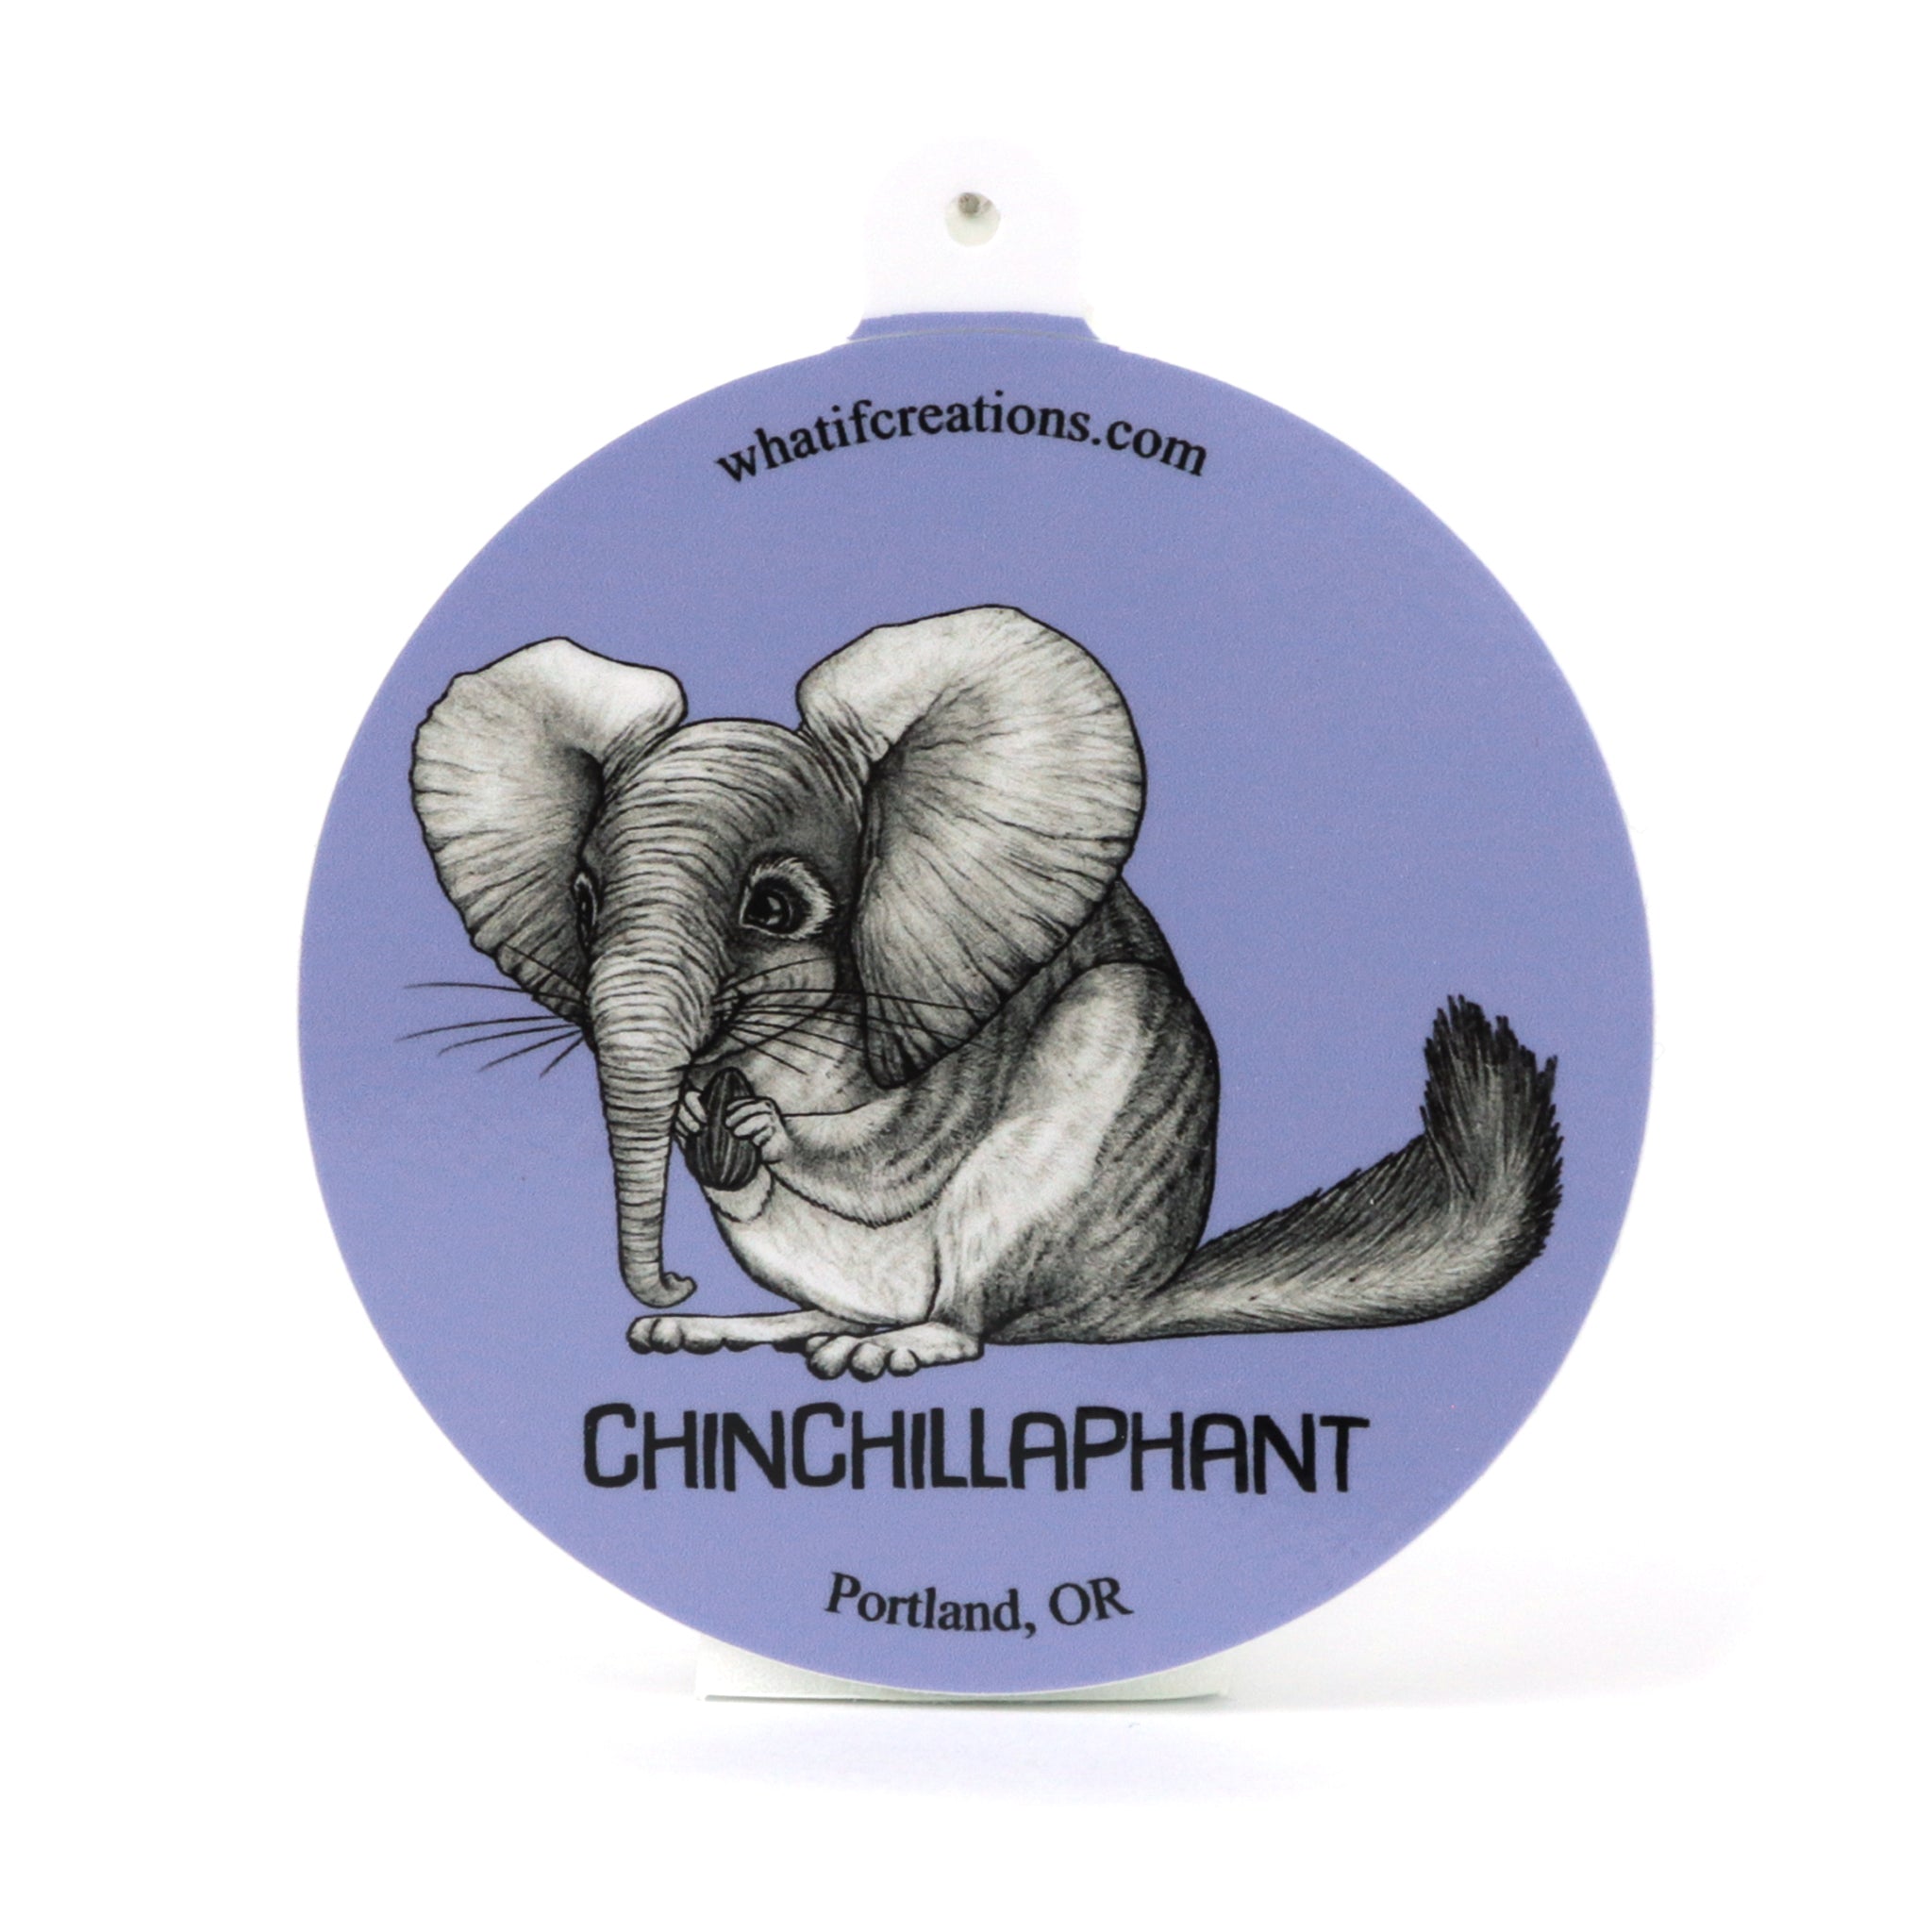 Chinchillaphant | Chinchilla + Elephant Hybrid Animal | 3" Vinyl Sticker